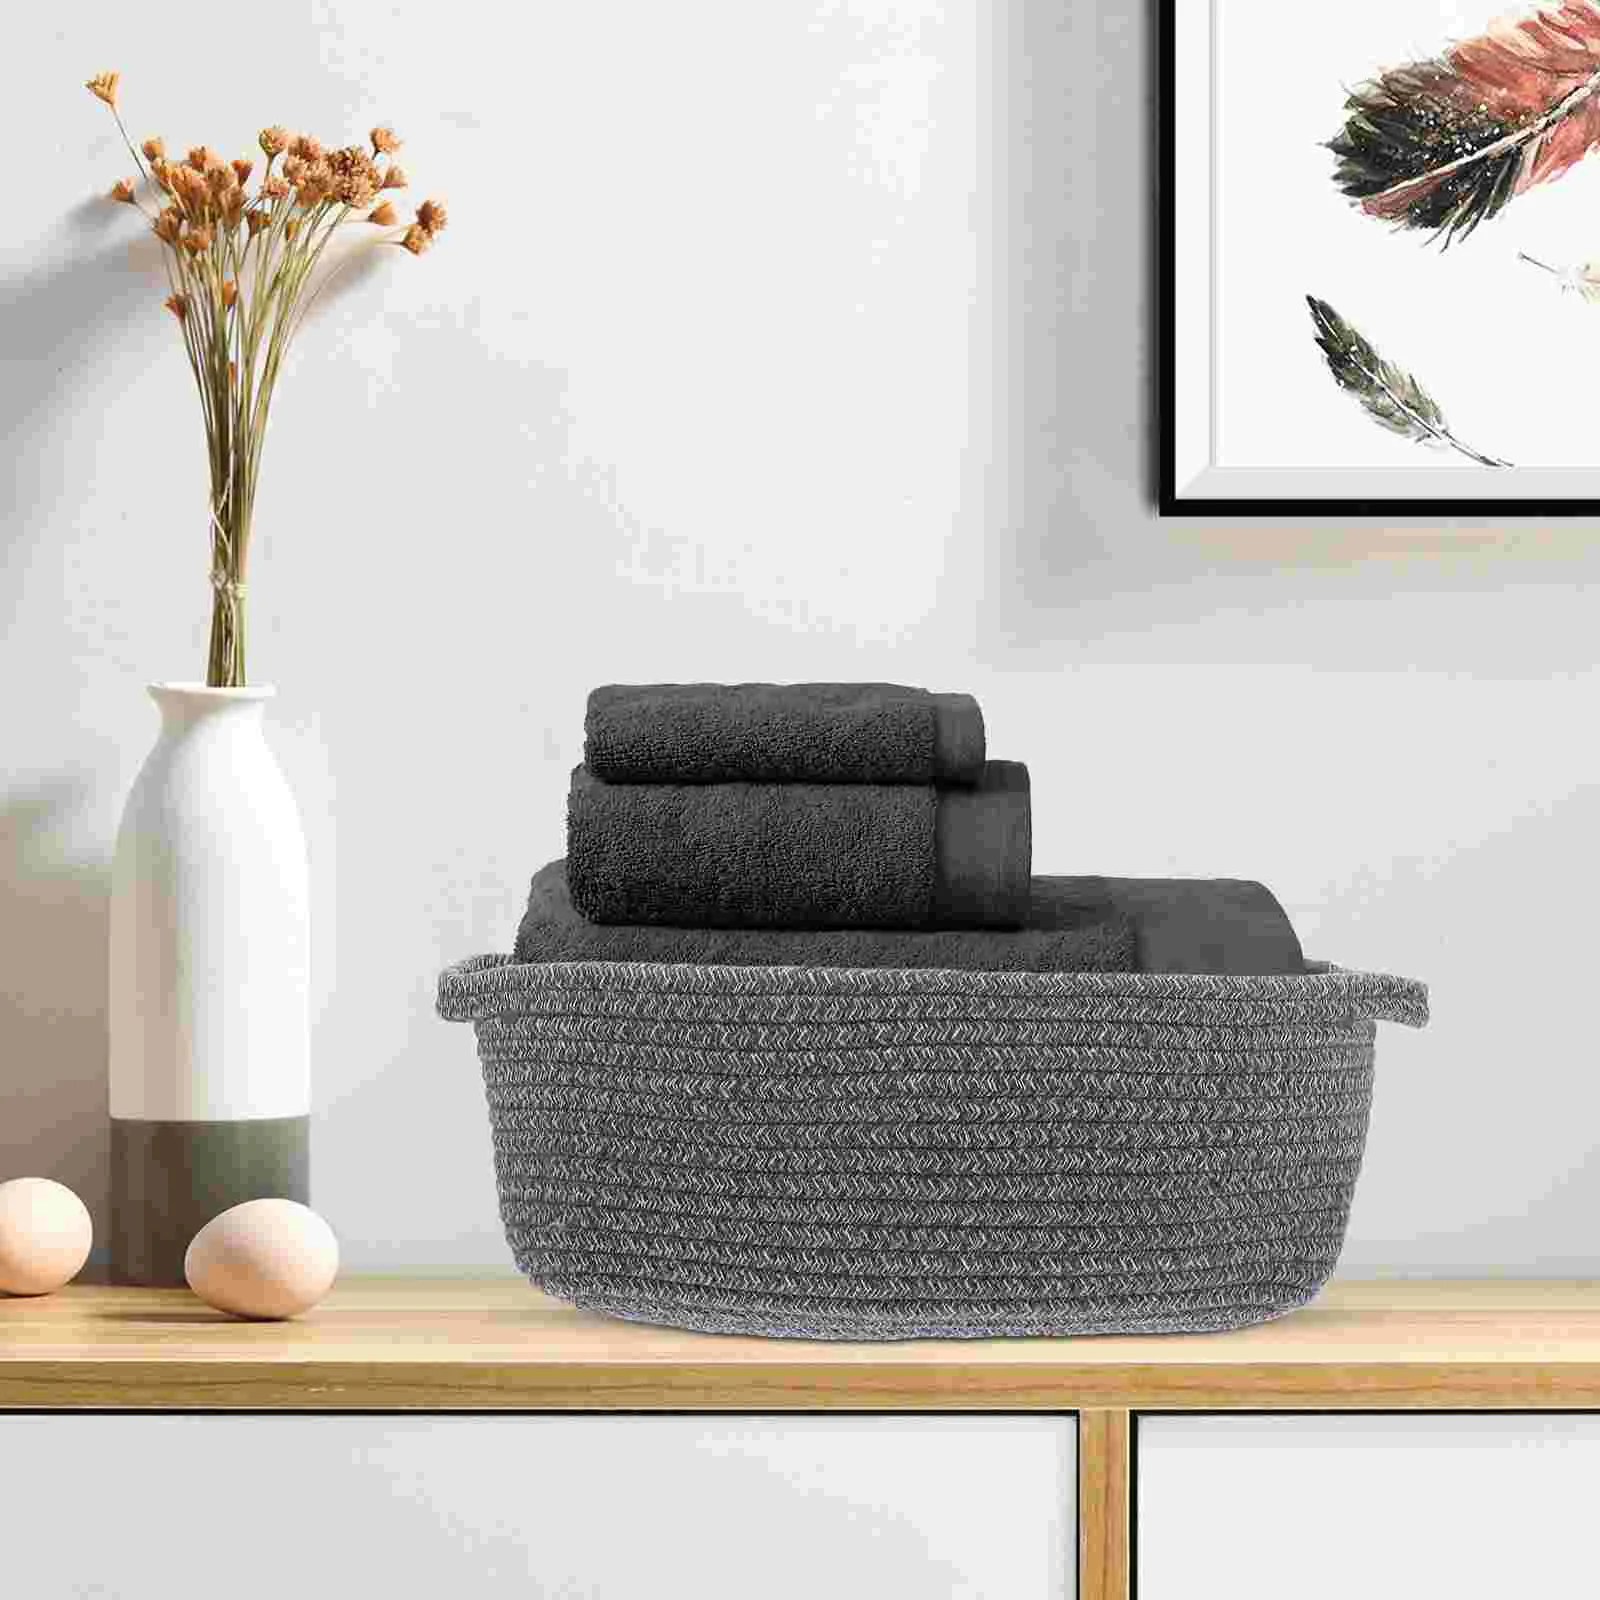 

Sundries Basket Woven Basket Toys Storage Basket Portable Basket for Towels Blankets